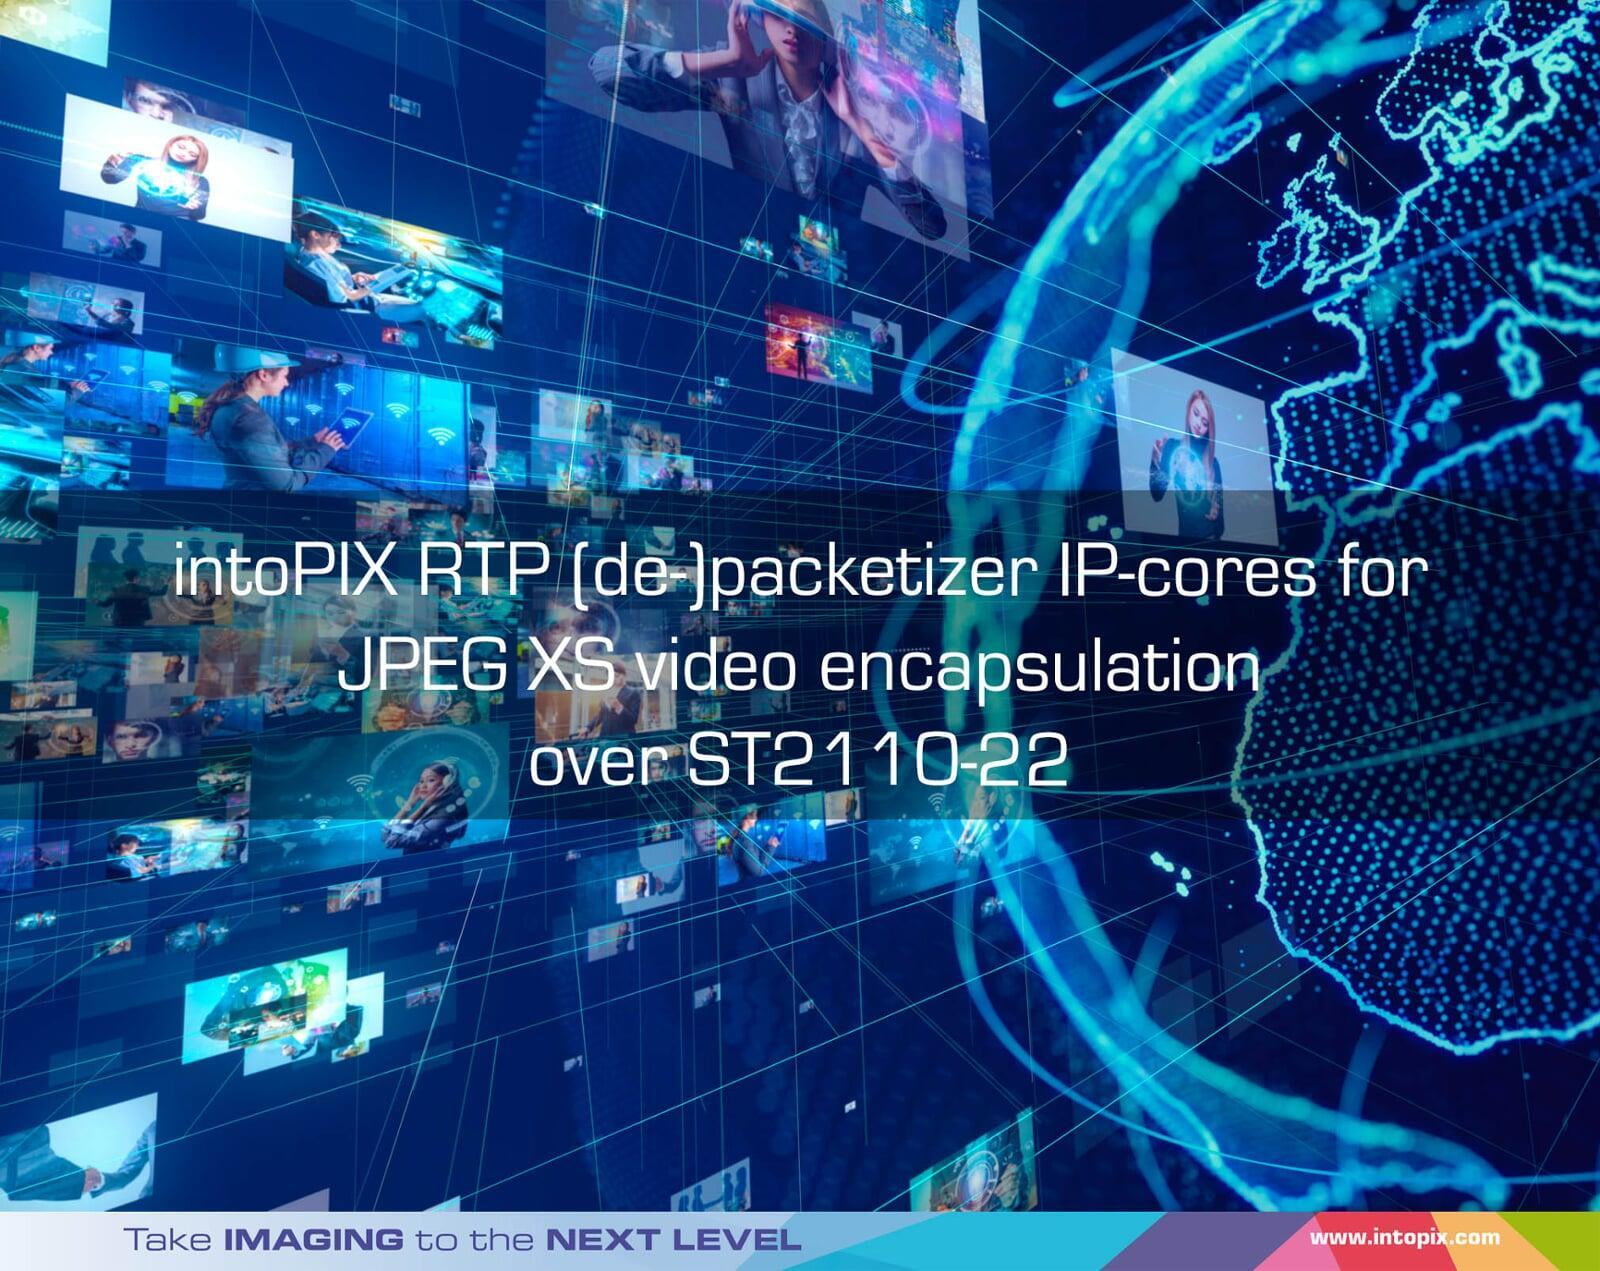 intoPIX publie des IP-cores de mise en paquet RTP pour l'encapsulation vidéo JPEG XS sur SMPTE 2110-22